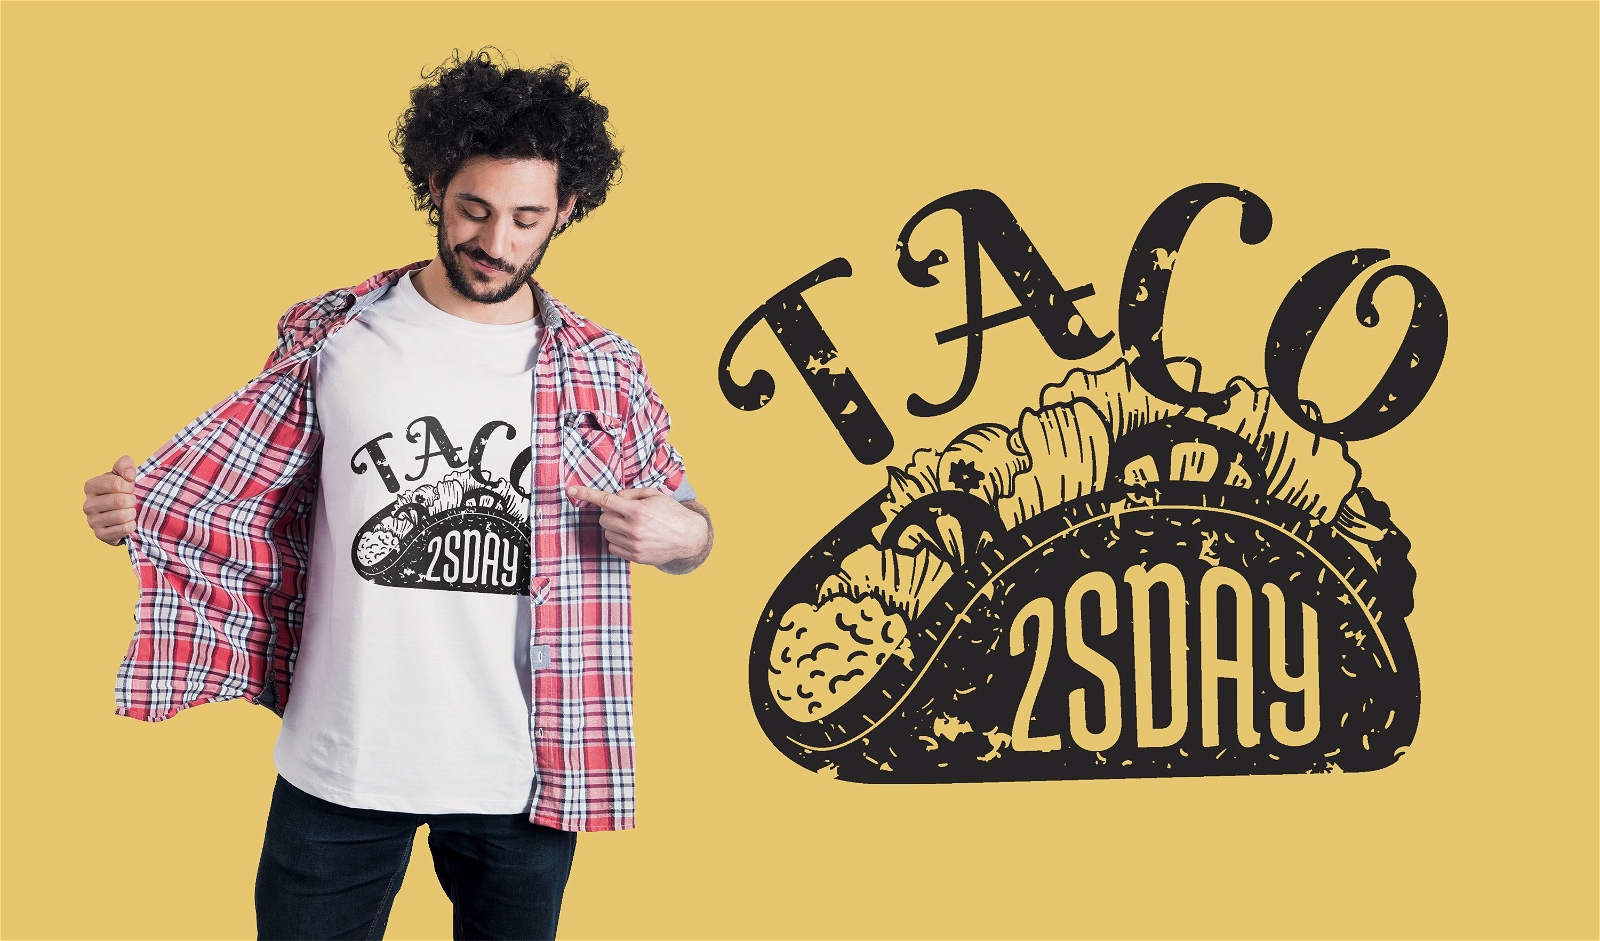 Taco Tuesday t-shirt design